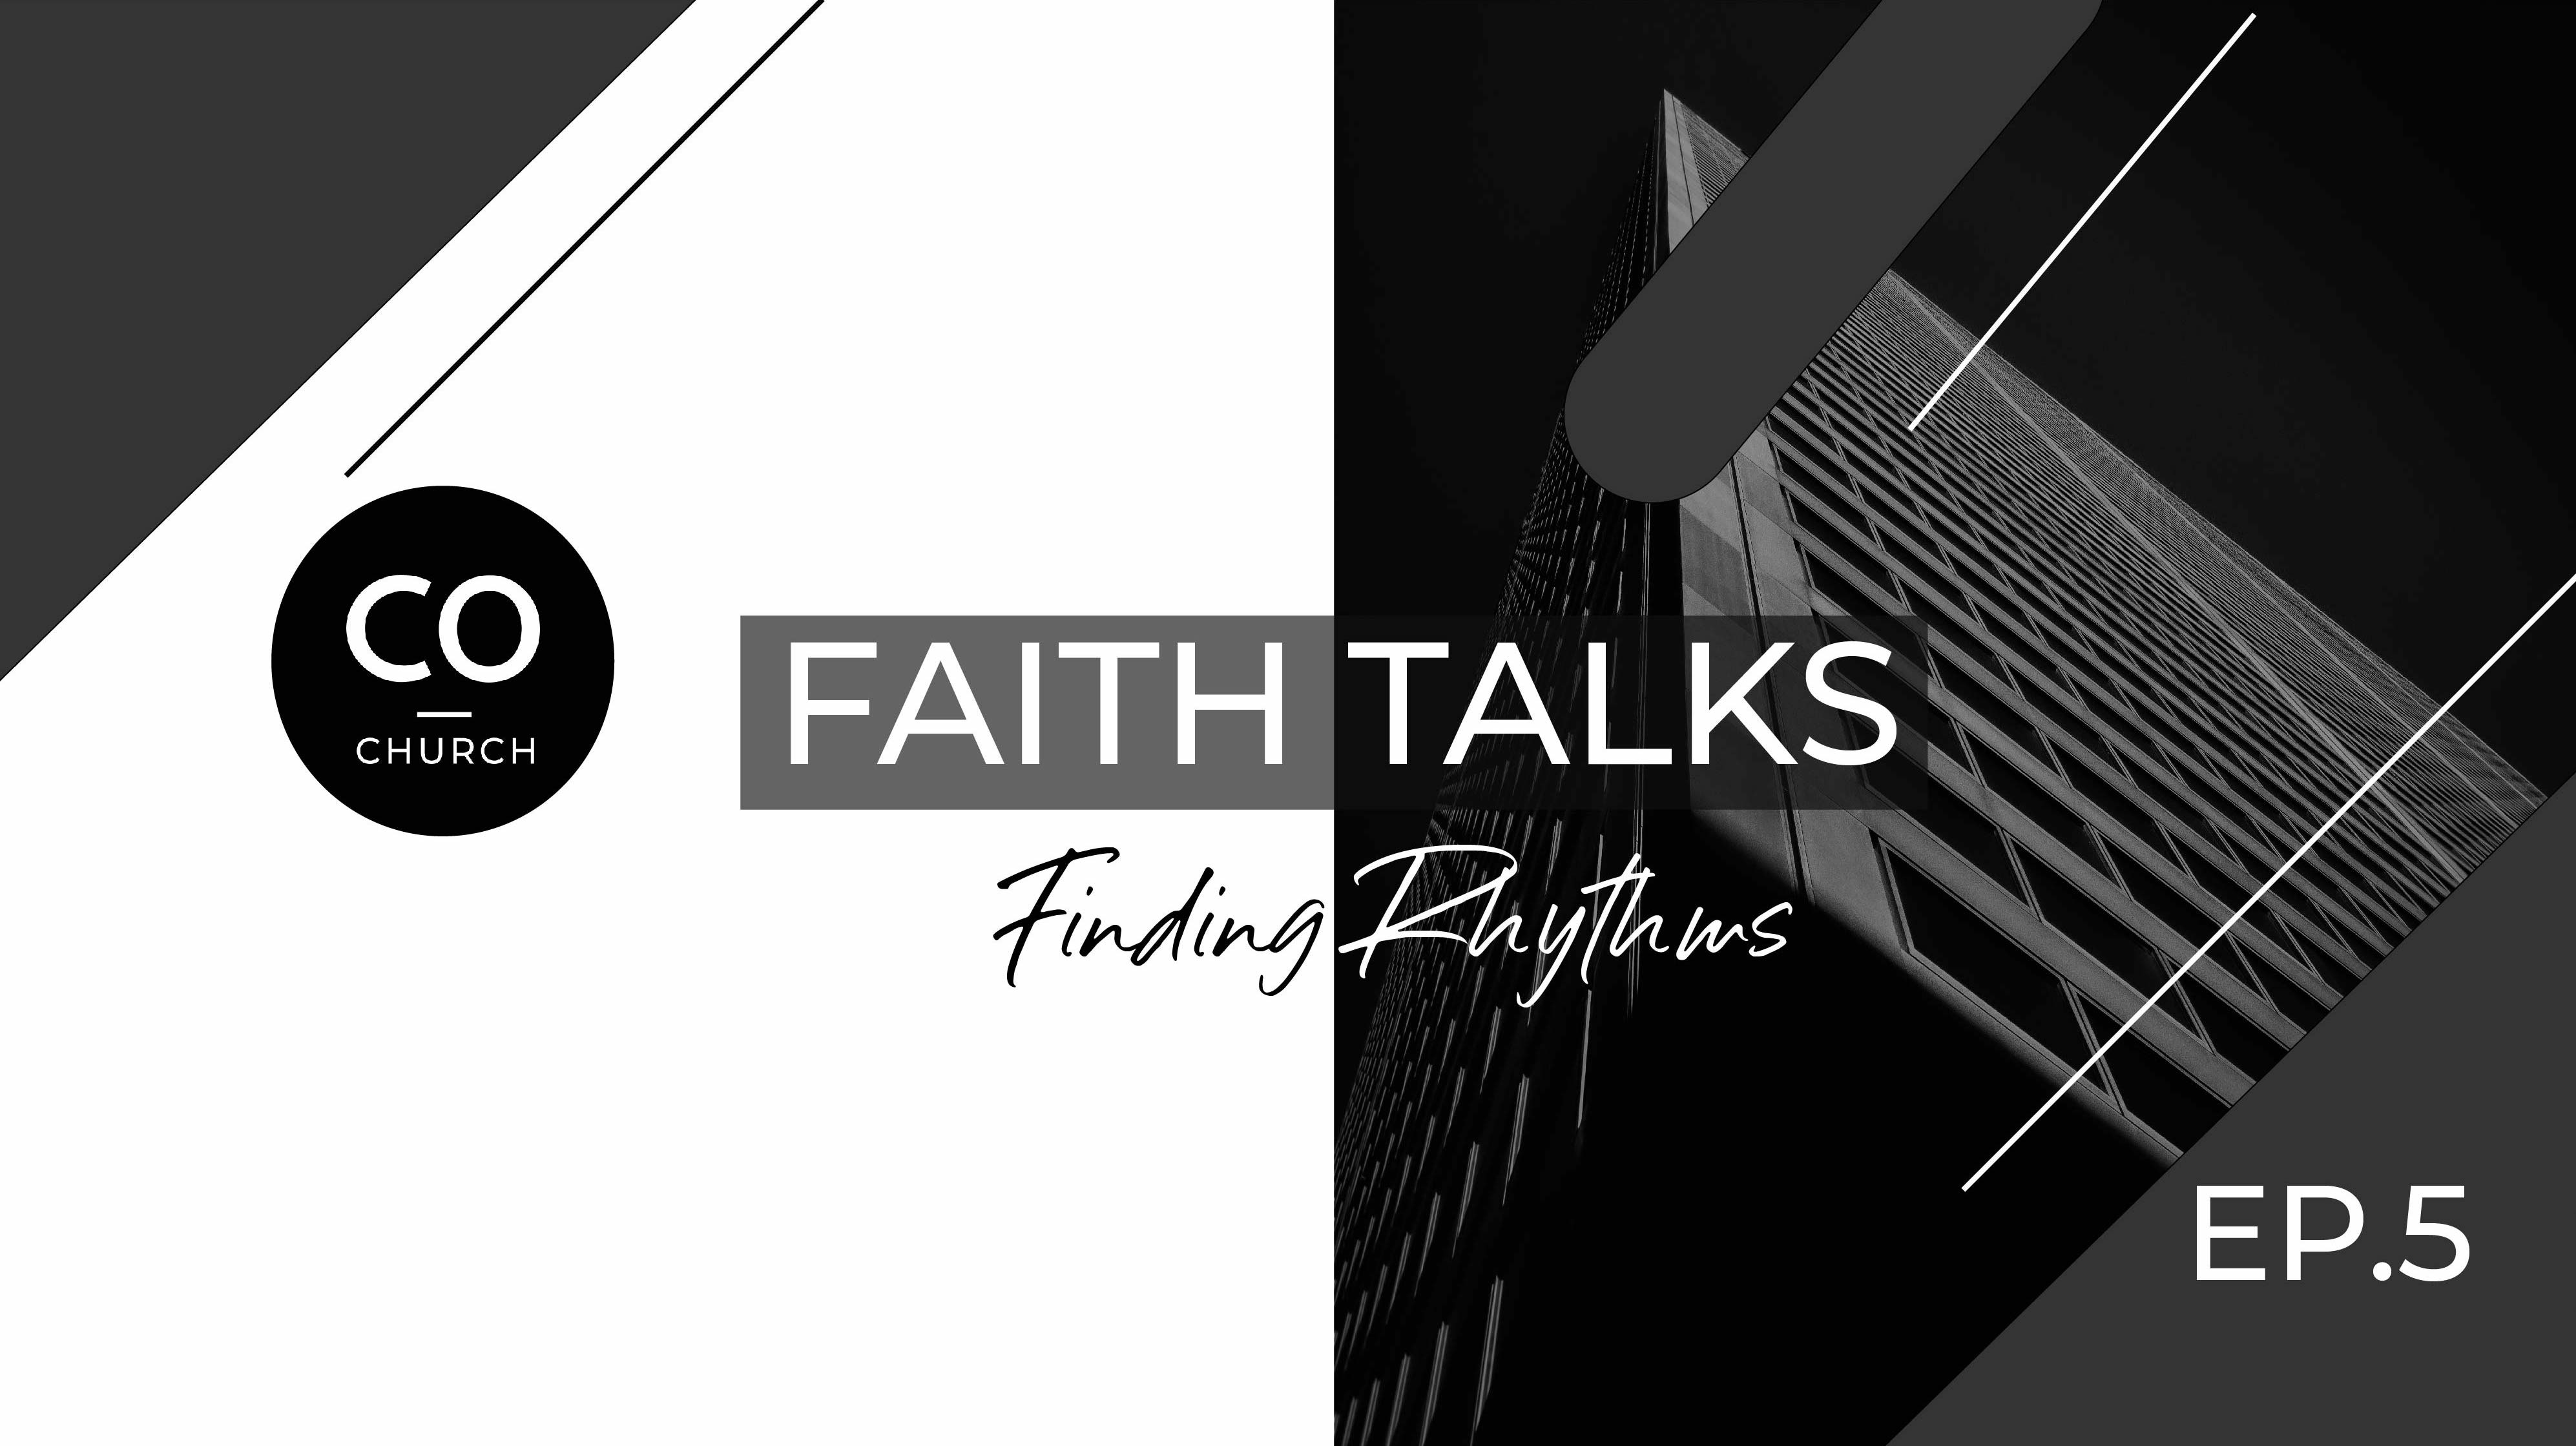 Faith Talks: Finding a Rhythm of Togetherness